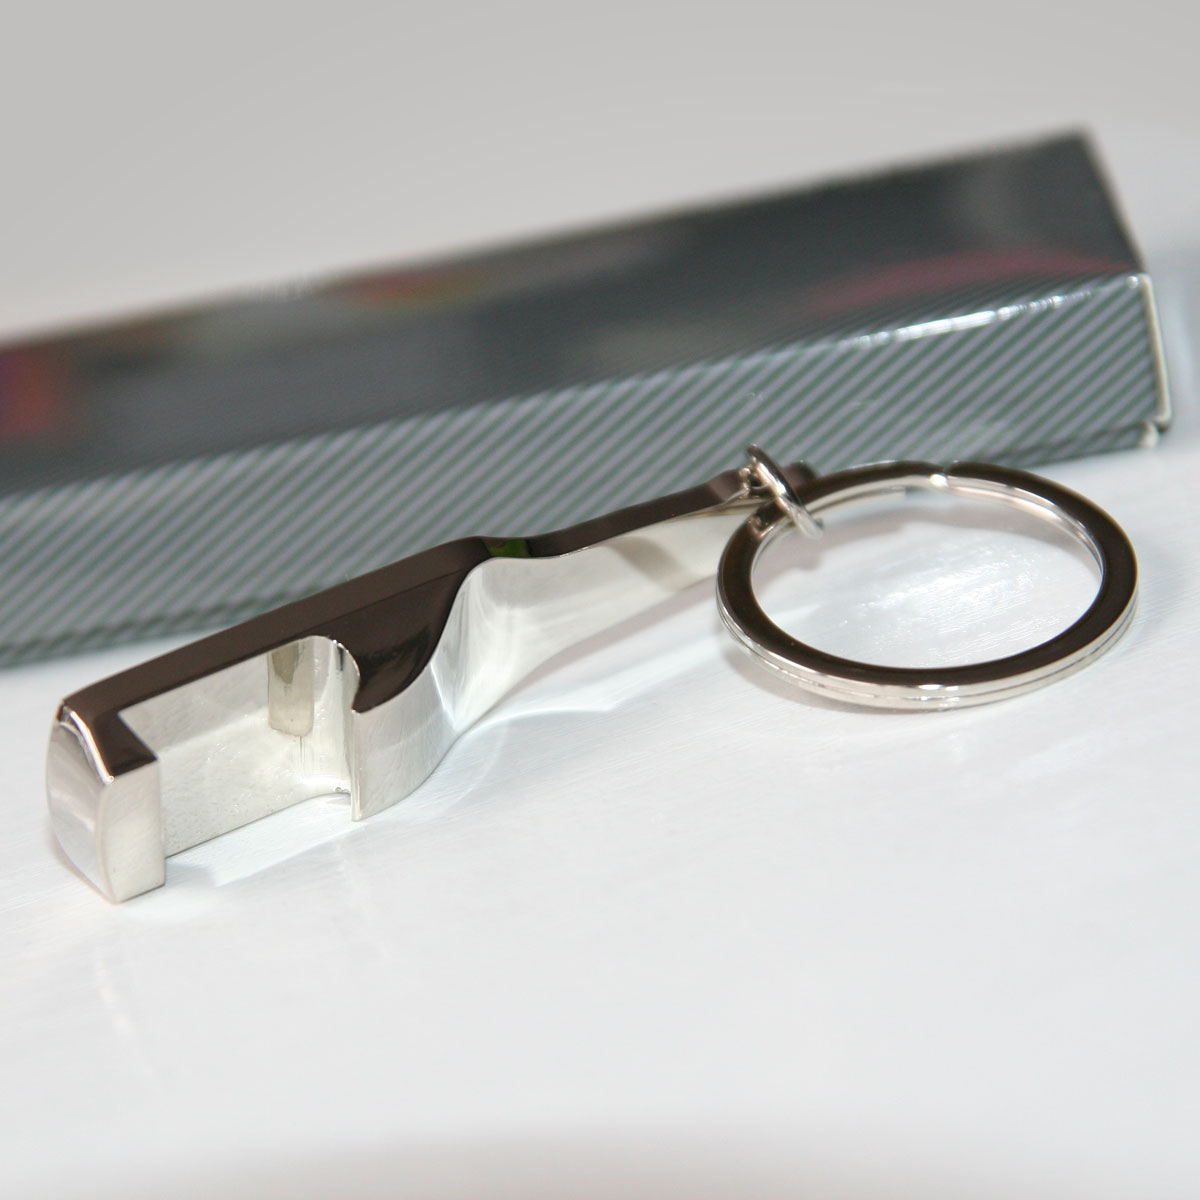 Bottle-shaped metal keychain bottle opener for sublimation